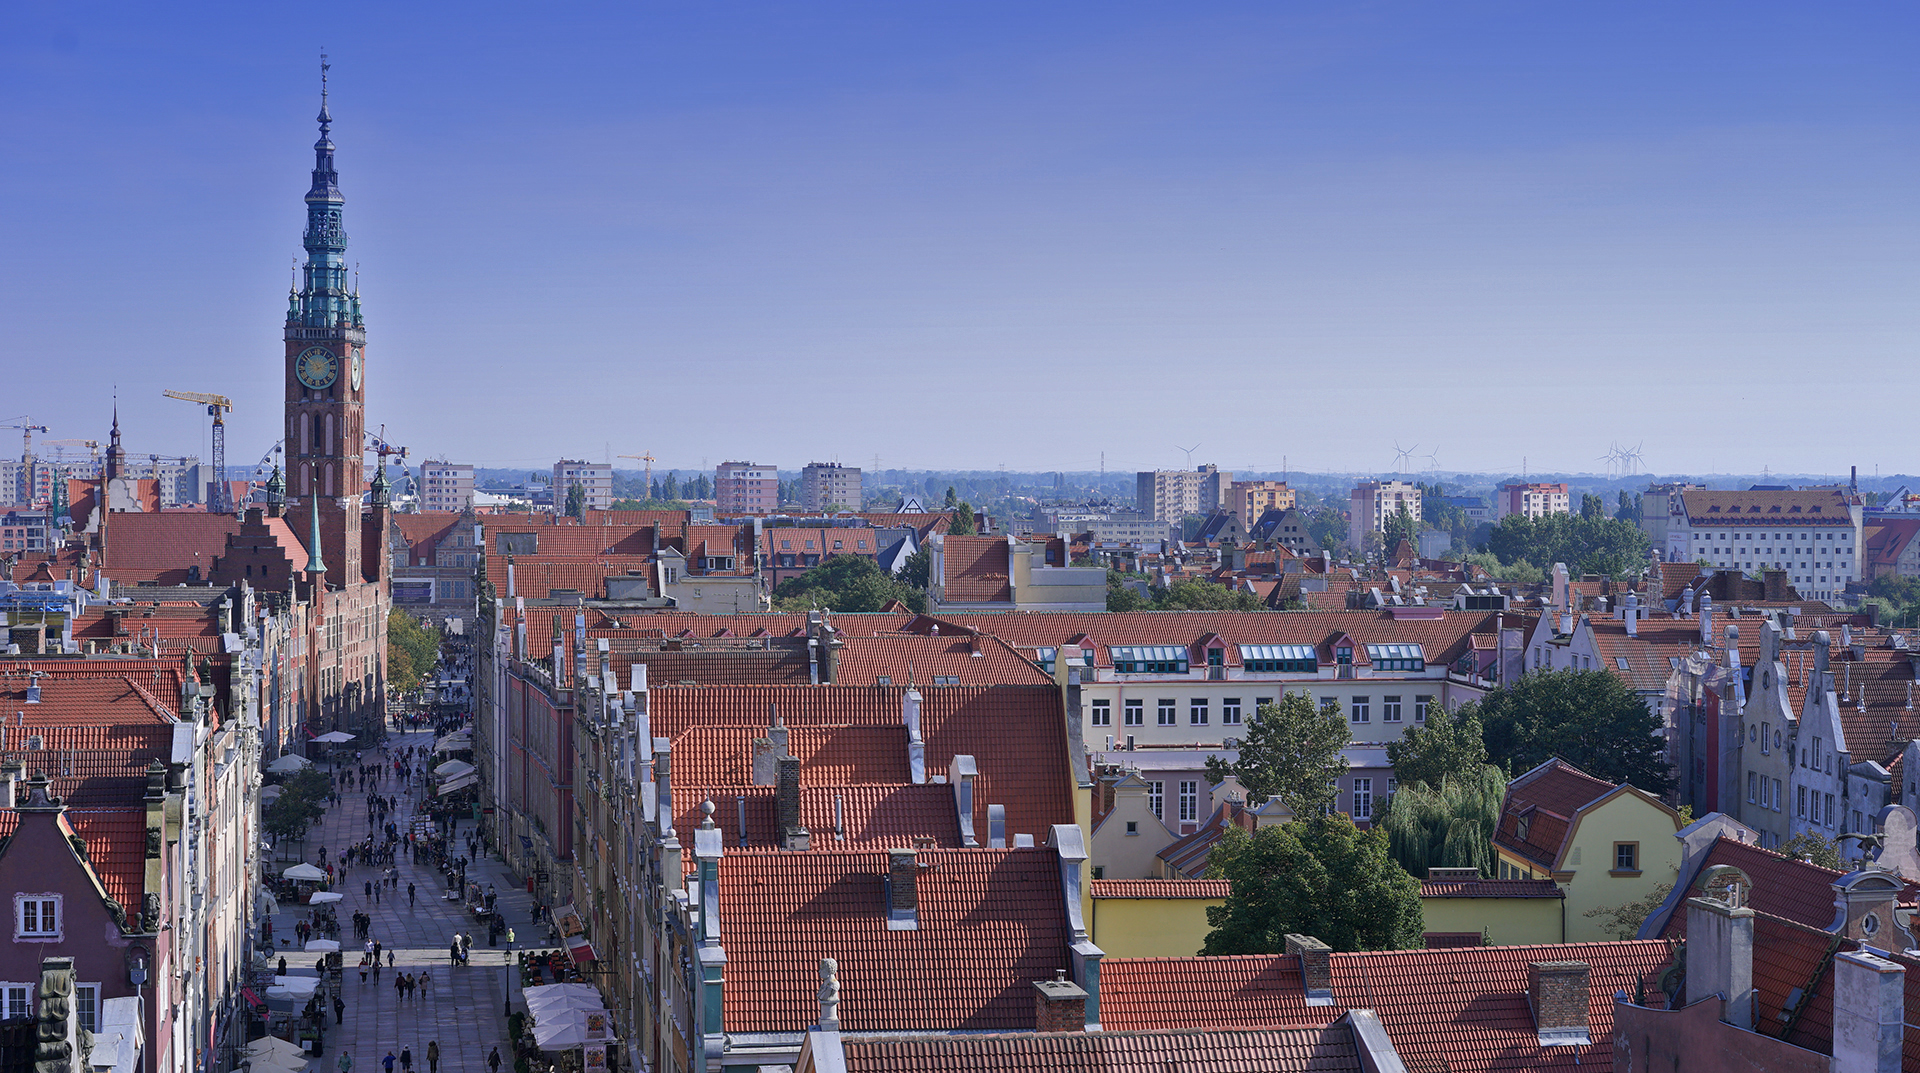 Panorama miasta, widok na kamieniczki przy ulicy Długiej. W głębi Ratusz Głównego Miasta. W oddali bloki mieszkalne, dachy budynków.